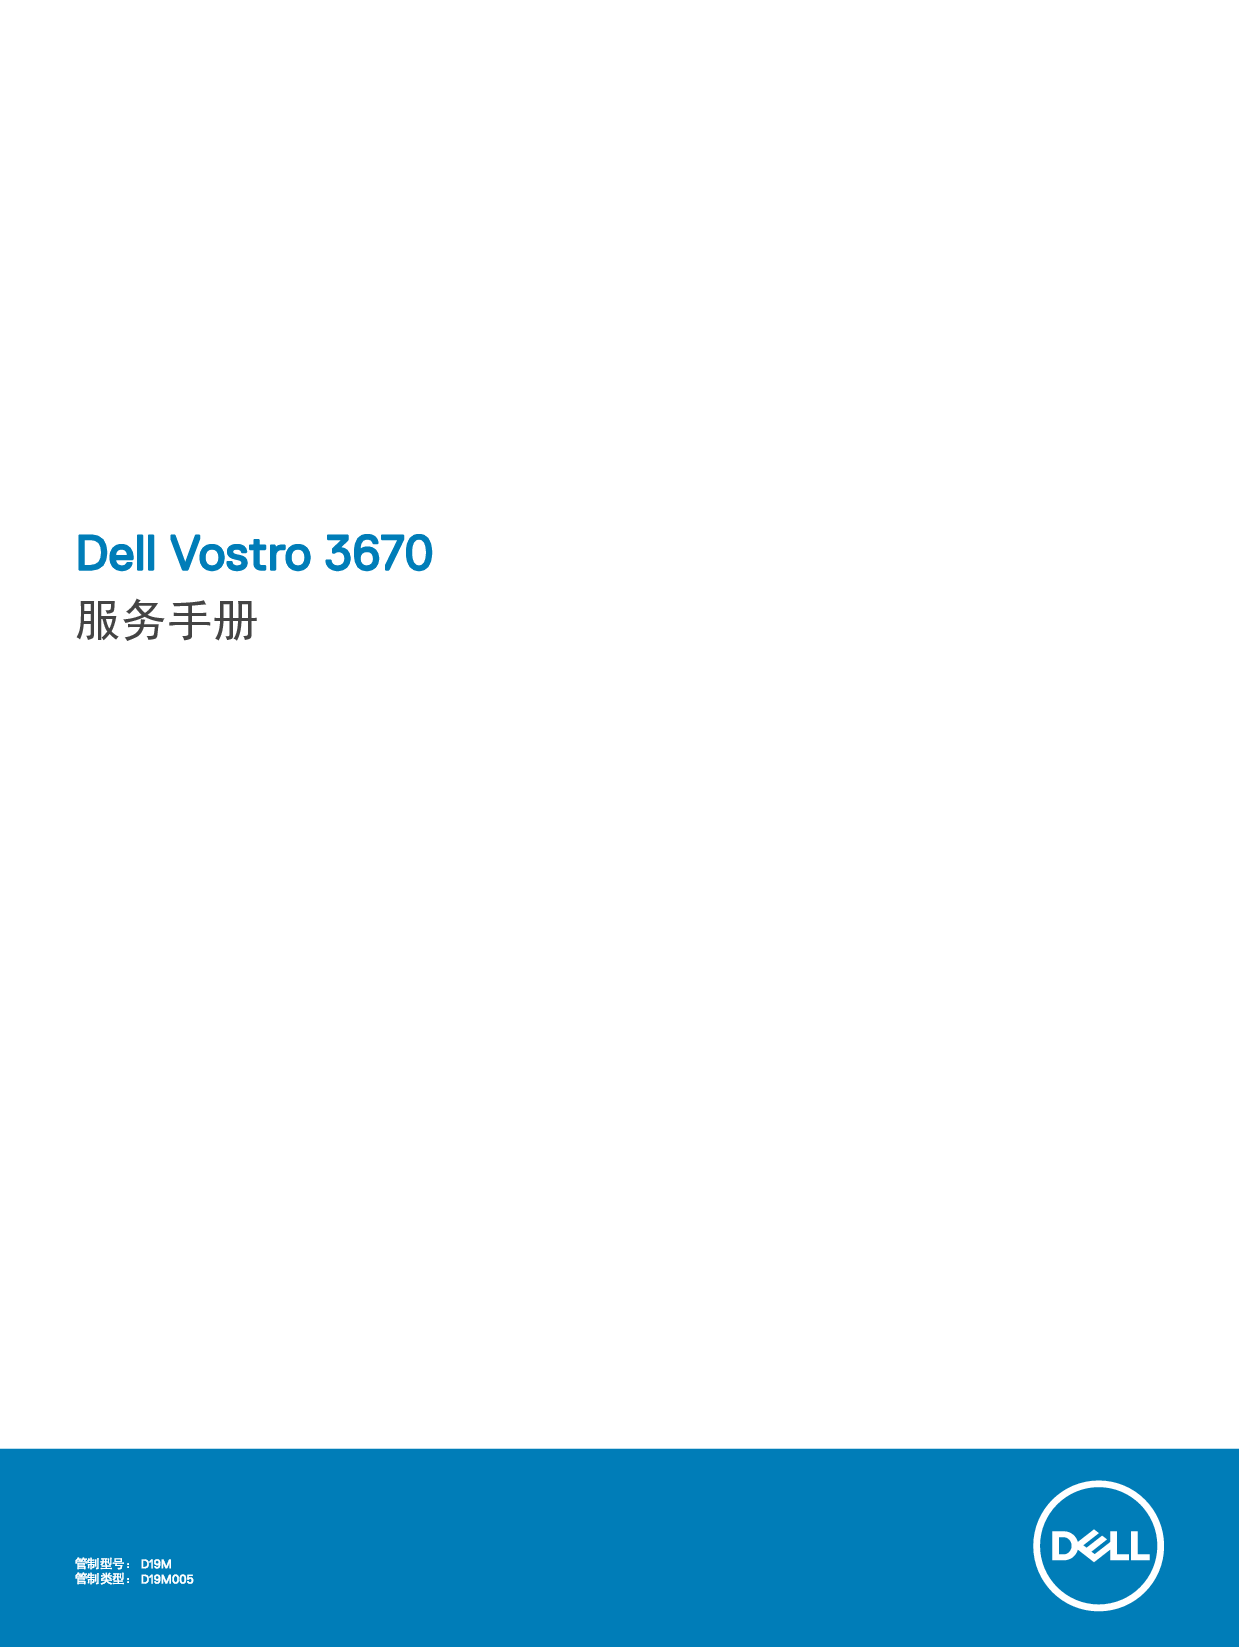 戴尔 Dell Vostro 3670 用户手册 封面